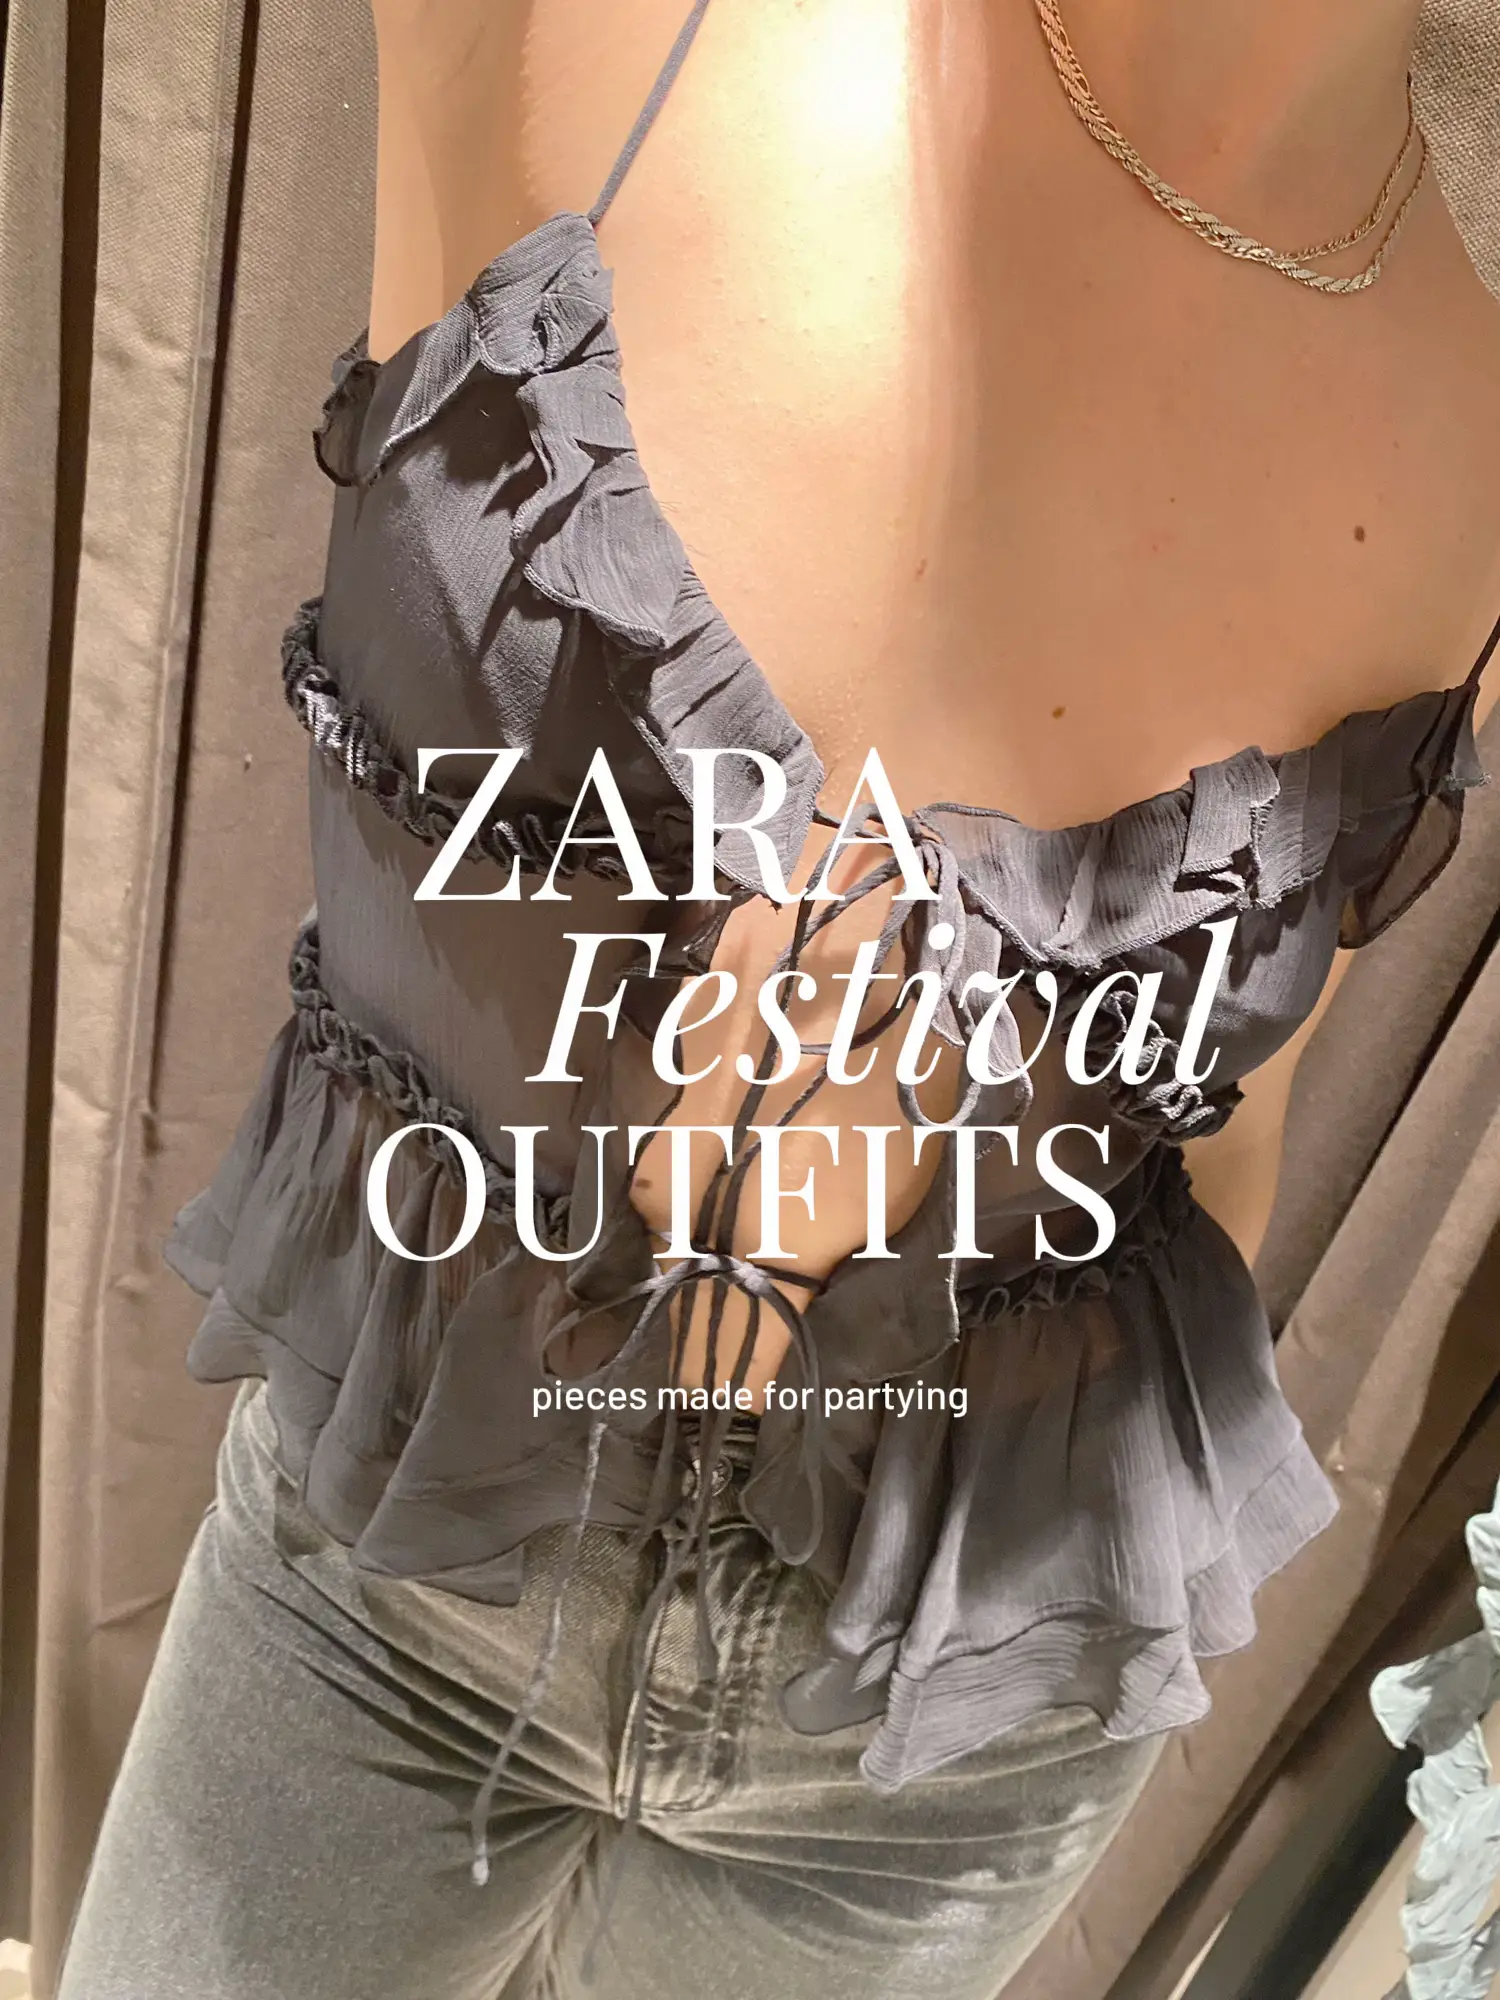 zara leather corset crop top, fits XS-M depending - Depop